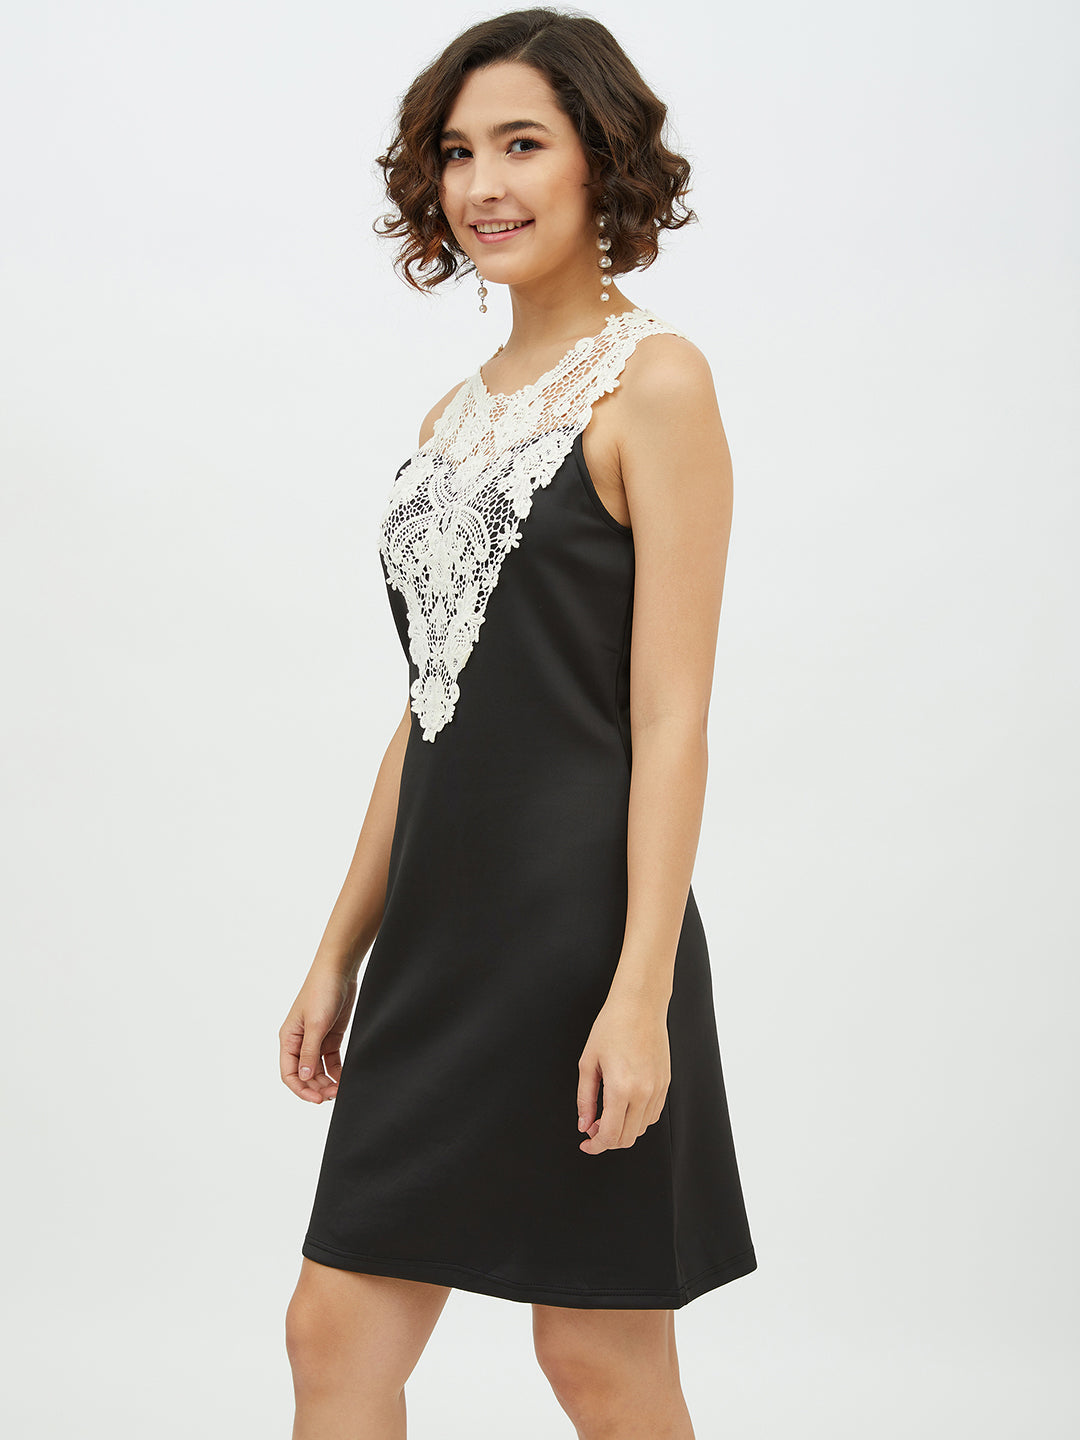 Women's Crochet Lace Black Dress